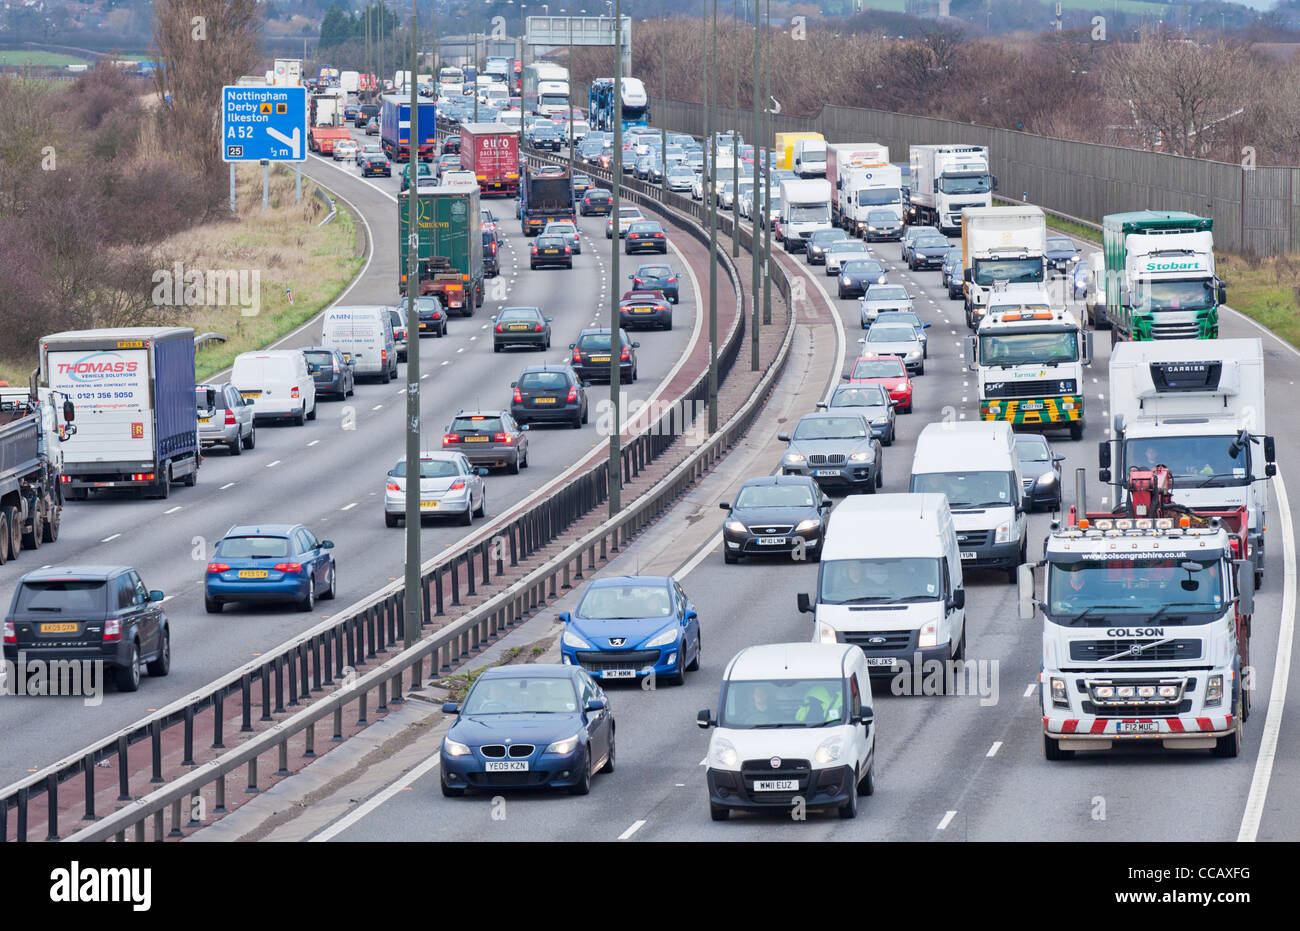 Verkehr auf der Autobahn uk Autobahn Verkehr Stau auf der Autobahn M1 in der Nähe der Kreuzung 25 Nottingham England gb uk europa Stockfoto